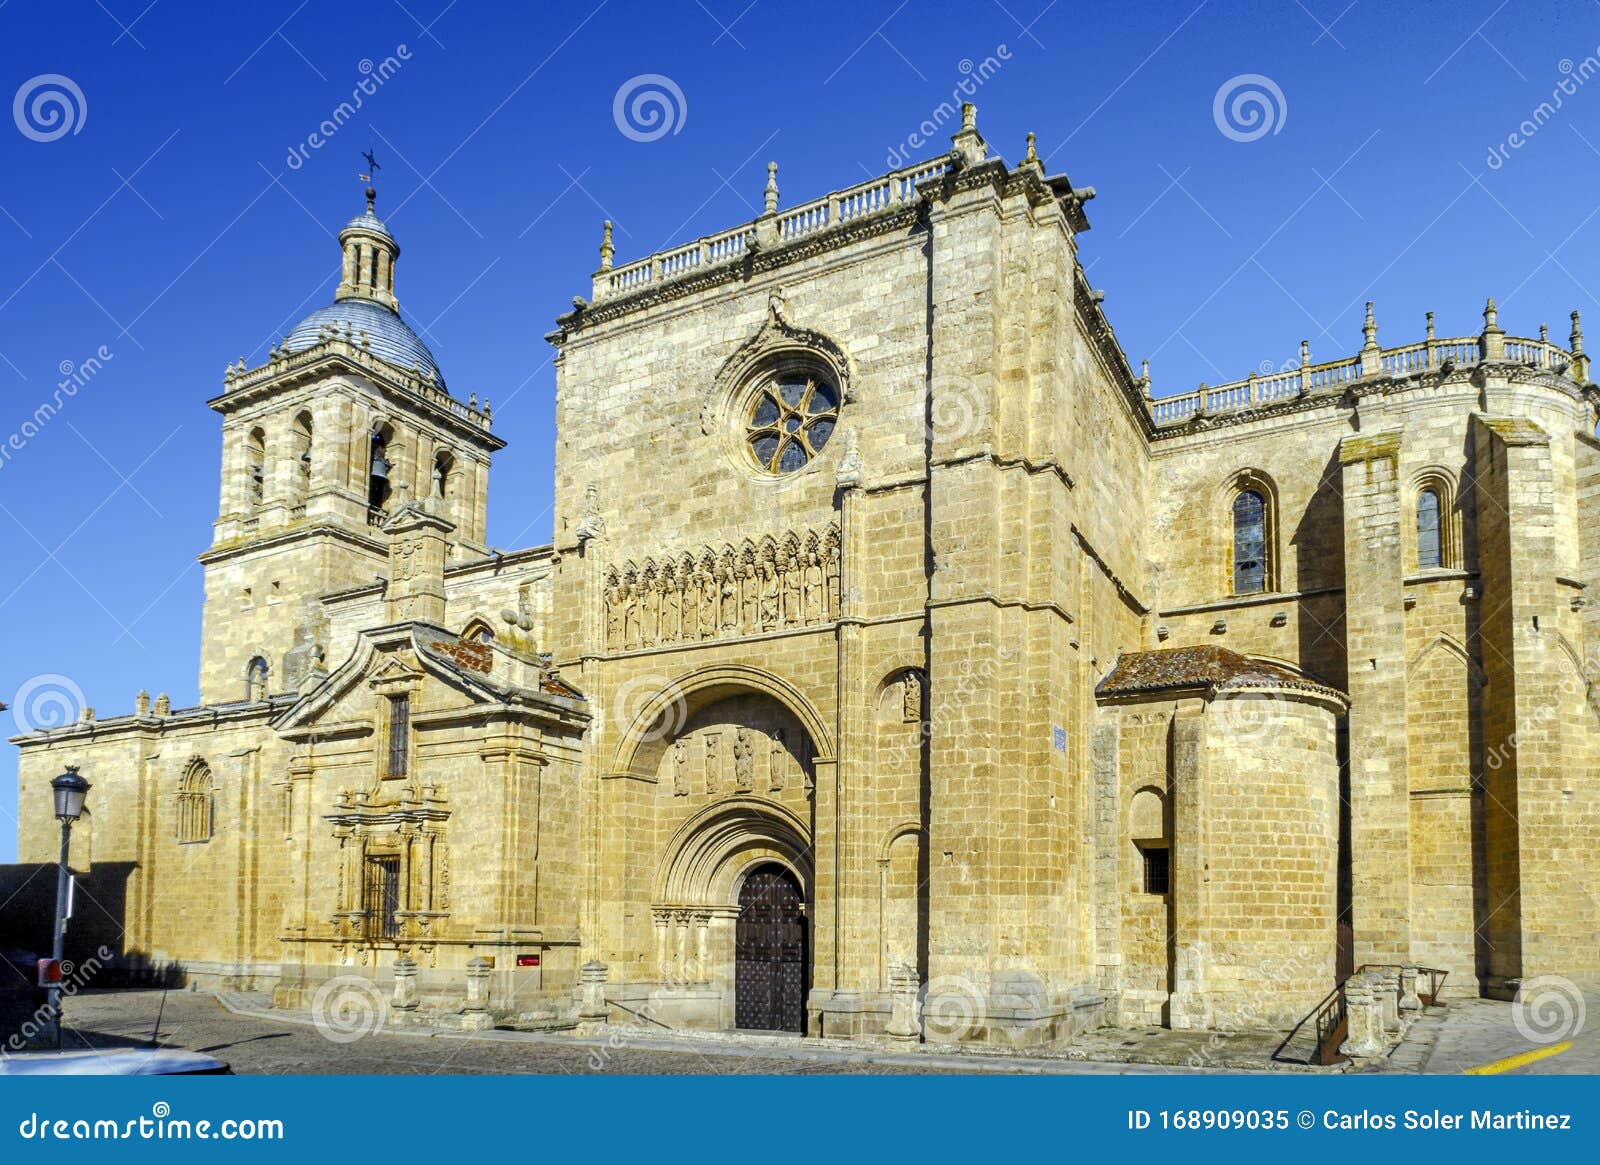 ciudad rodrigo cathedral in spain